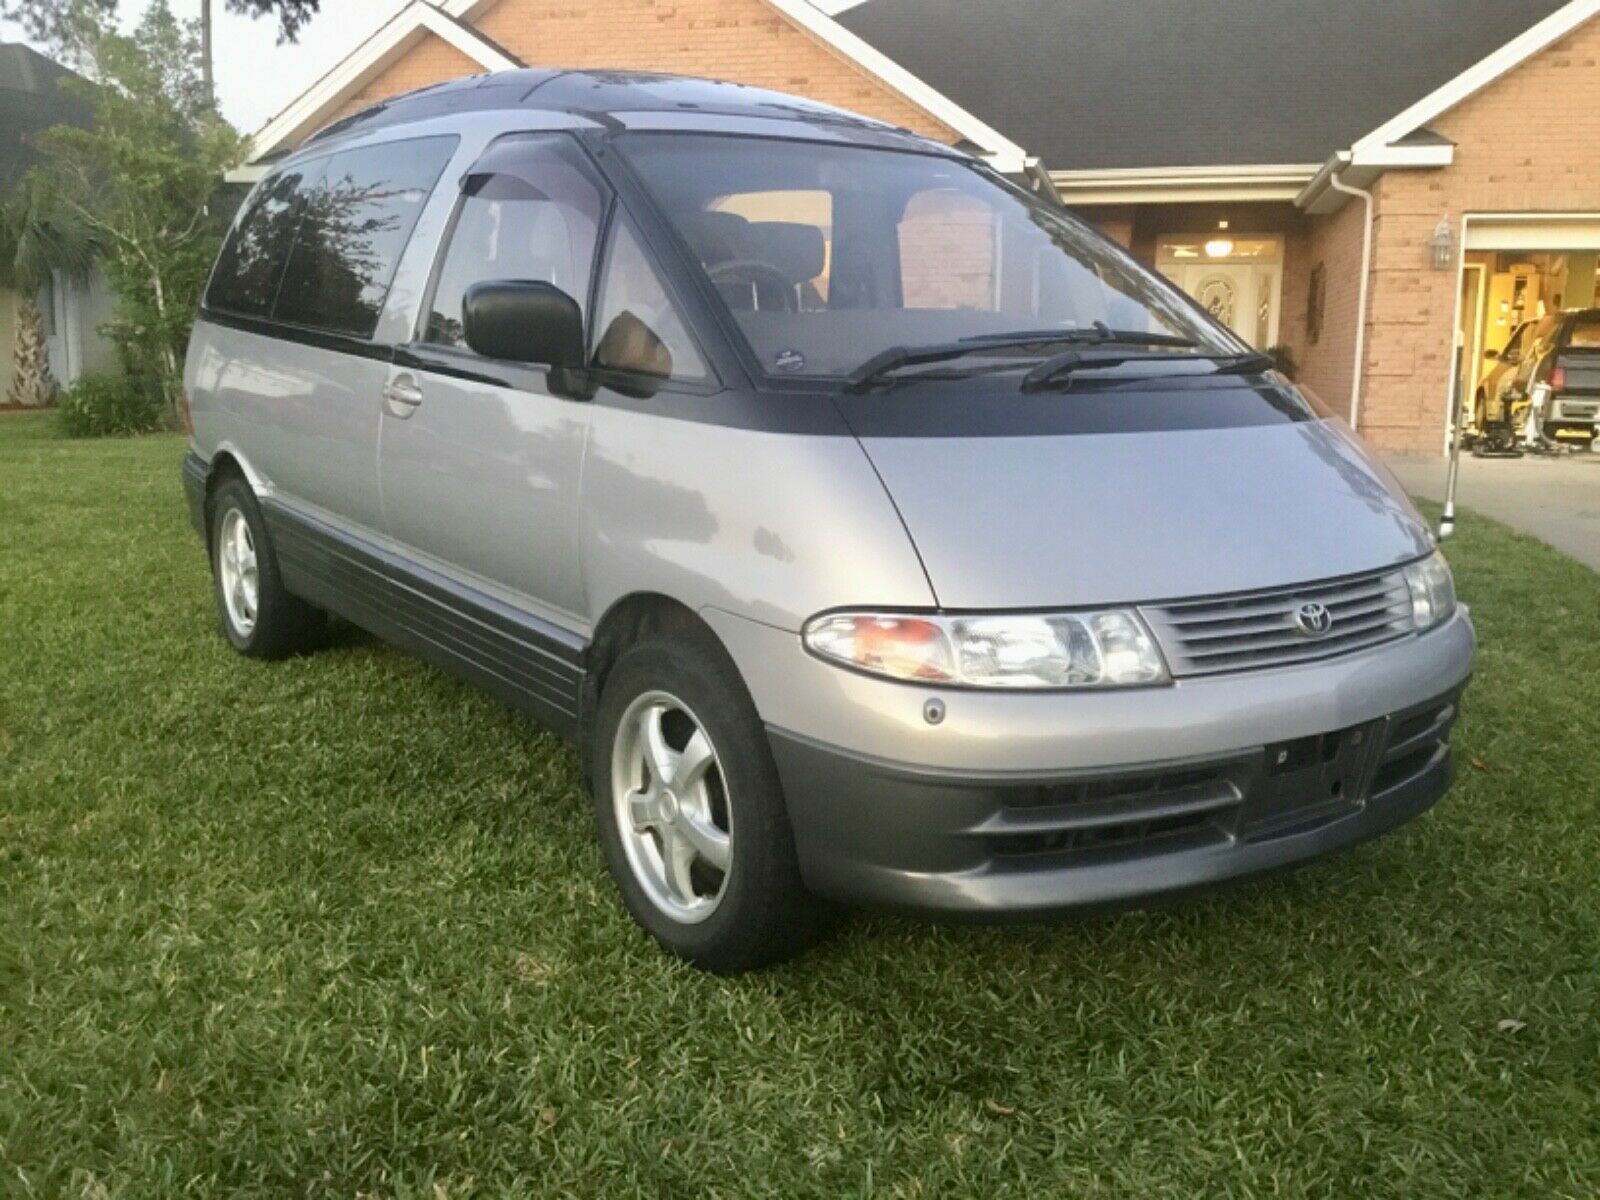 90s toyota minivan